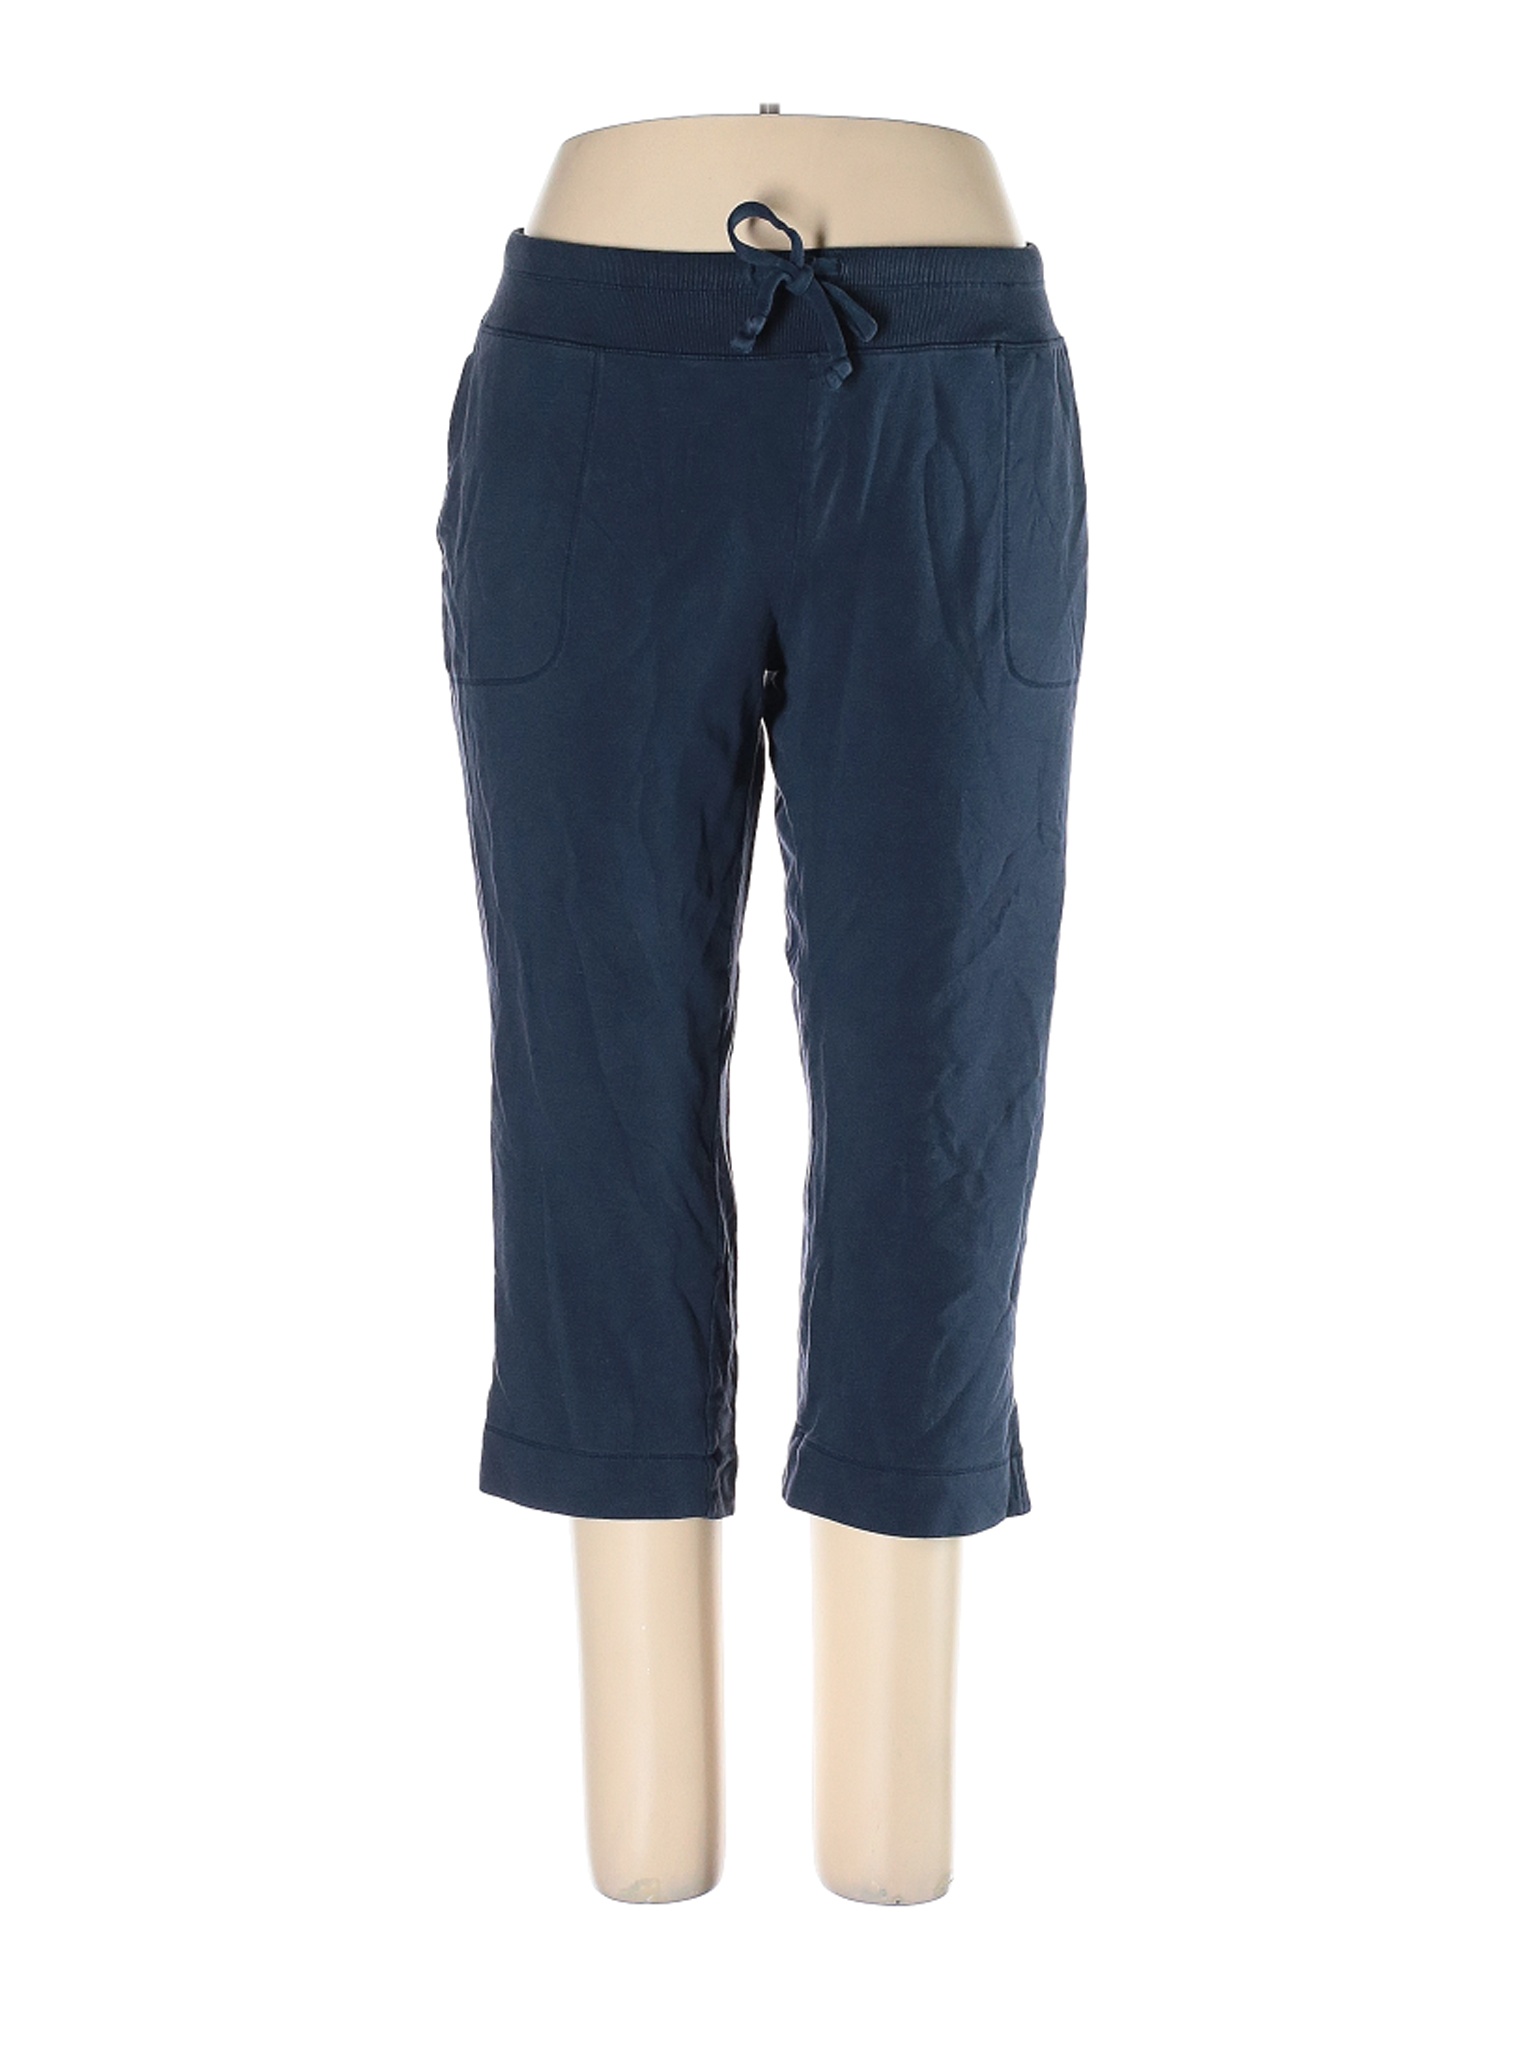 Lands' End Women Blue Casual Pants 1X Plus | eBay